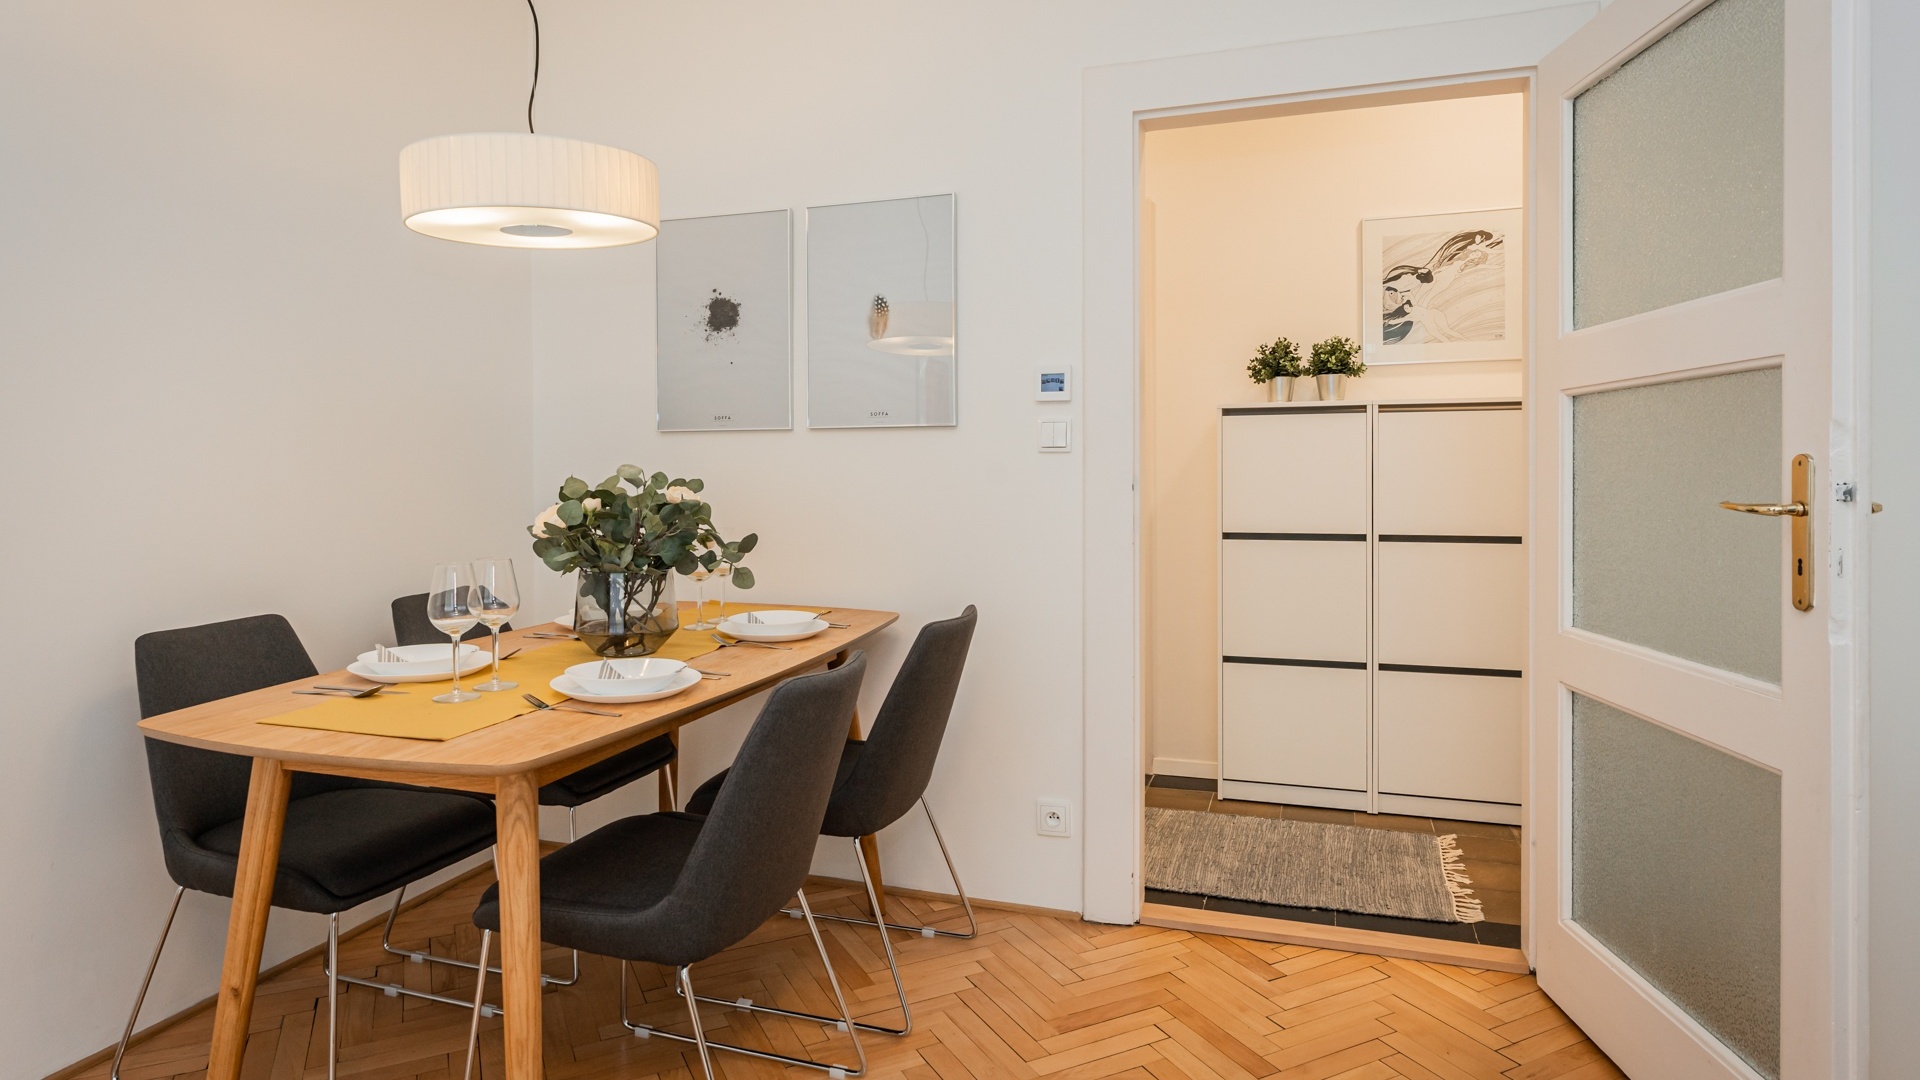 Prodej zrekonstruovaného bytu 2+1, 61 m², Praha - Nusle